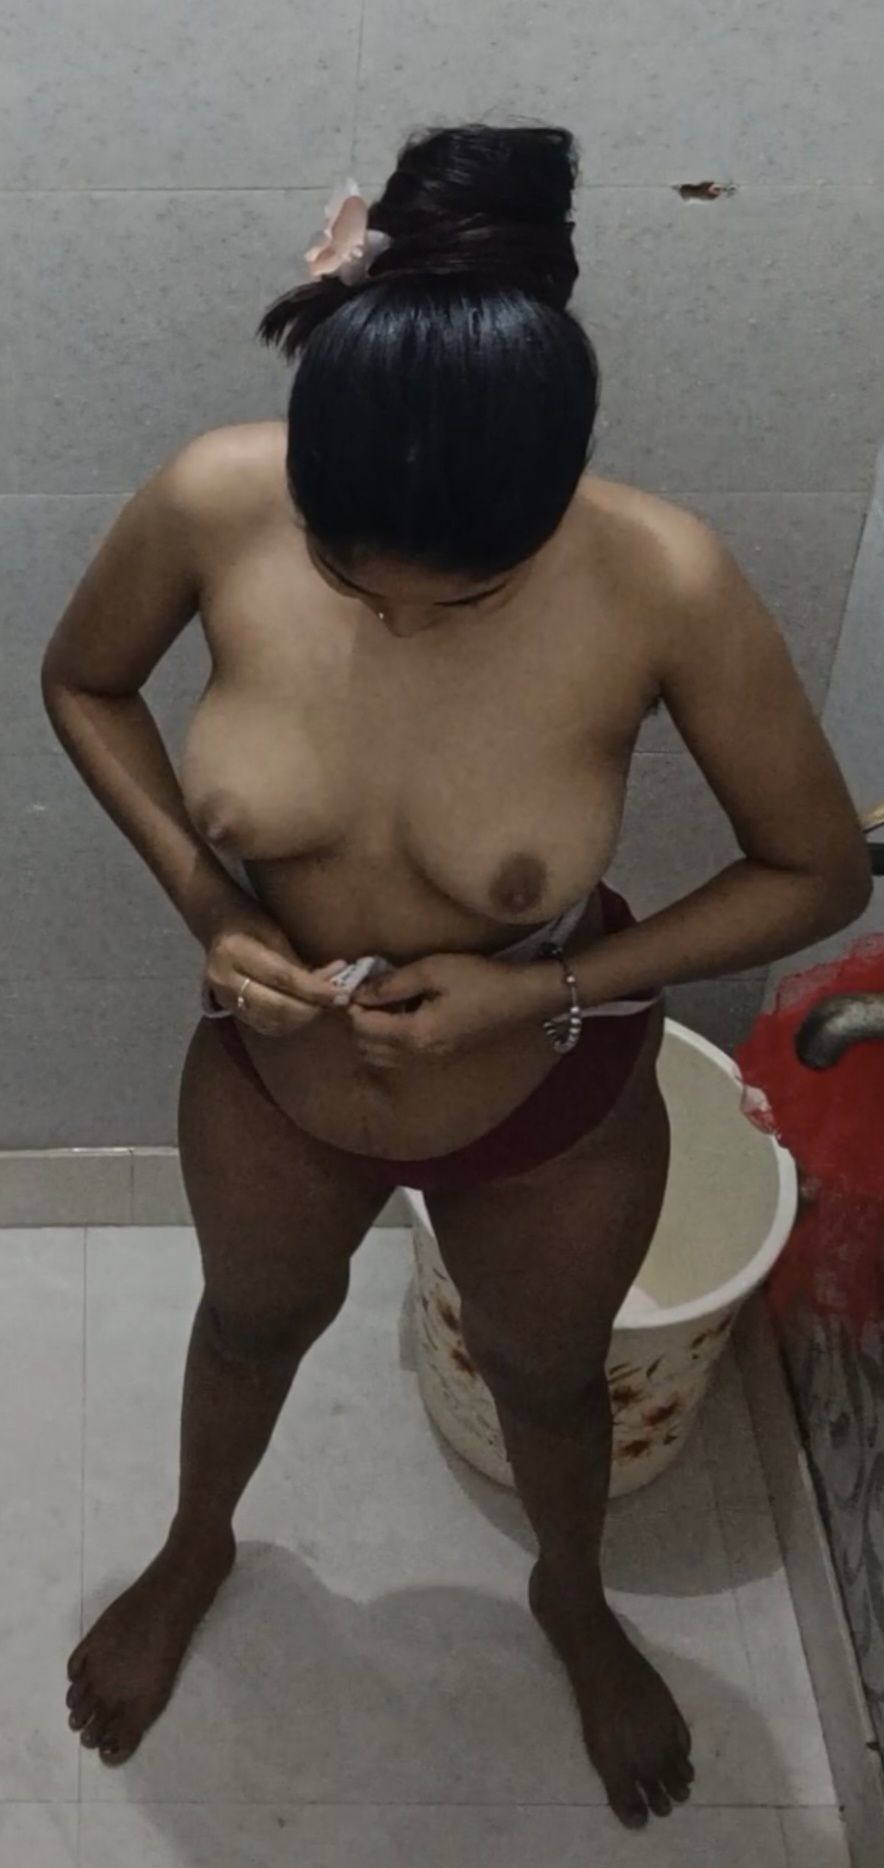 Slut wife bath pic